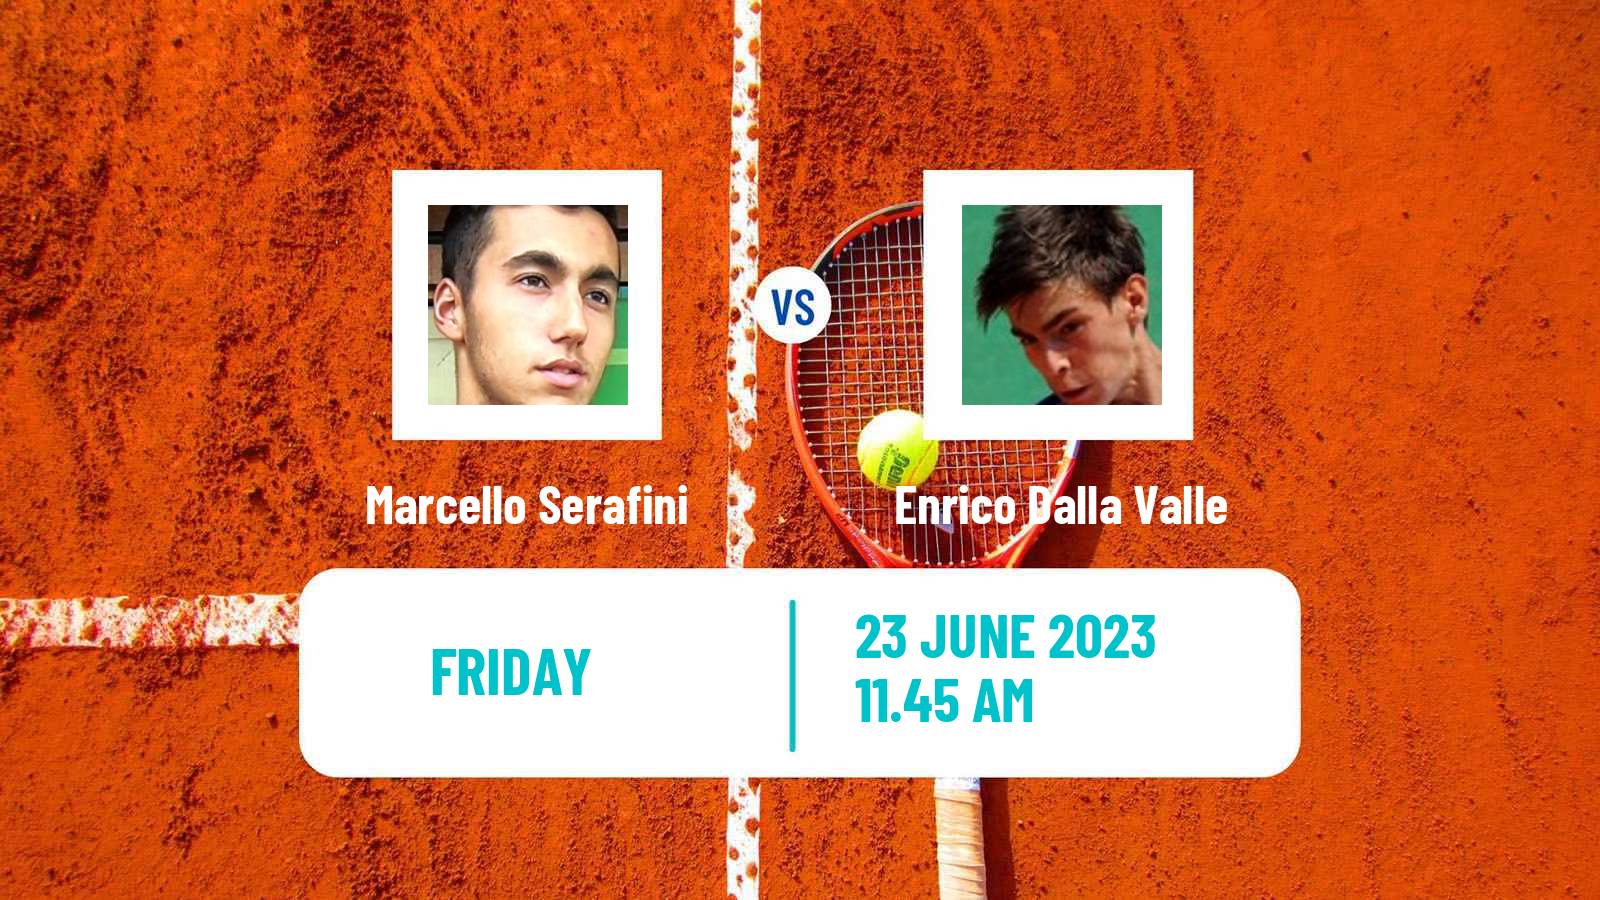 Tennis ITF M25 Cattolica Men Marcello Serafini - Enrico Dalla Valle